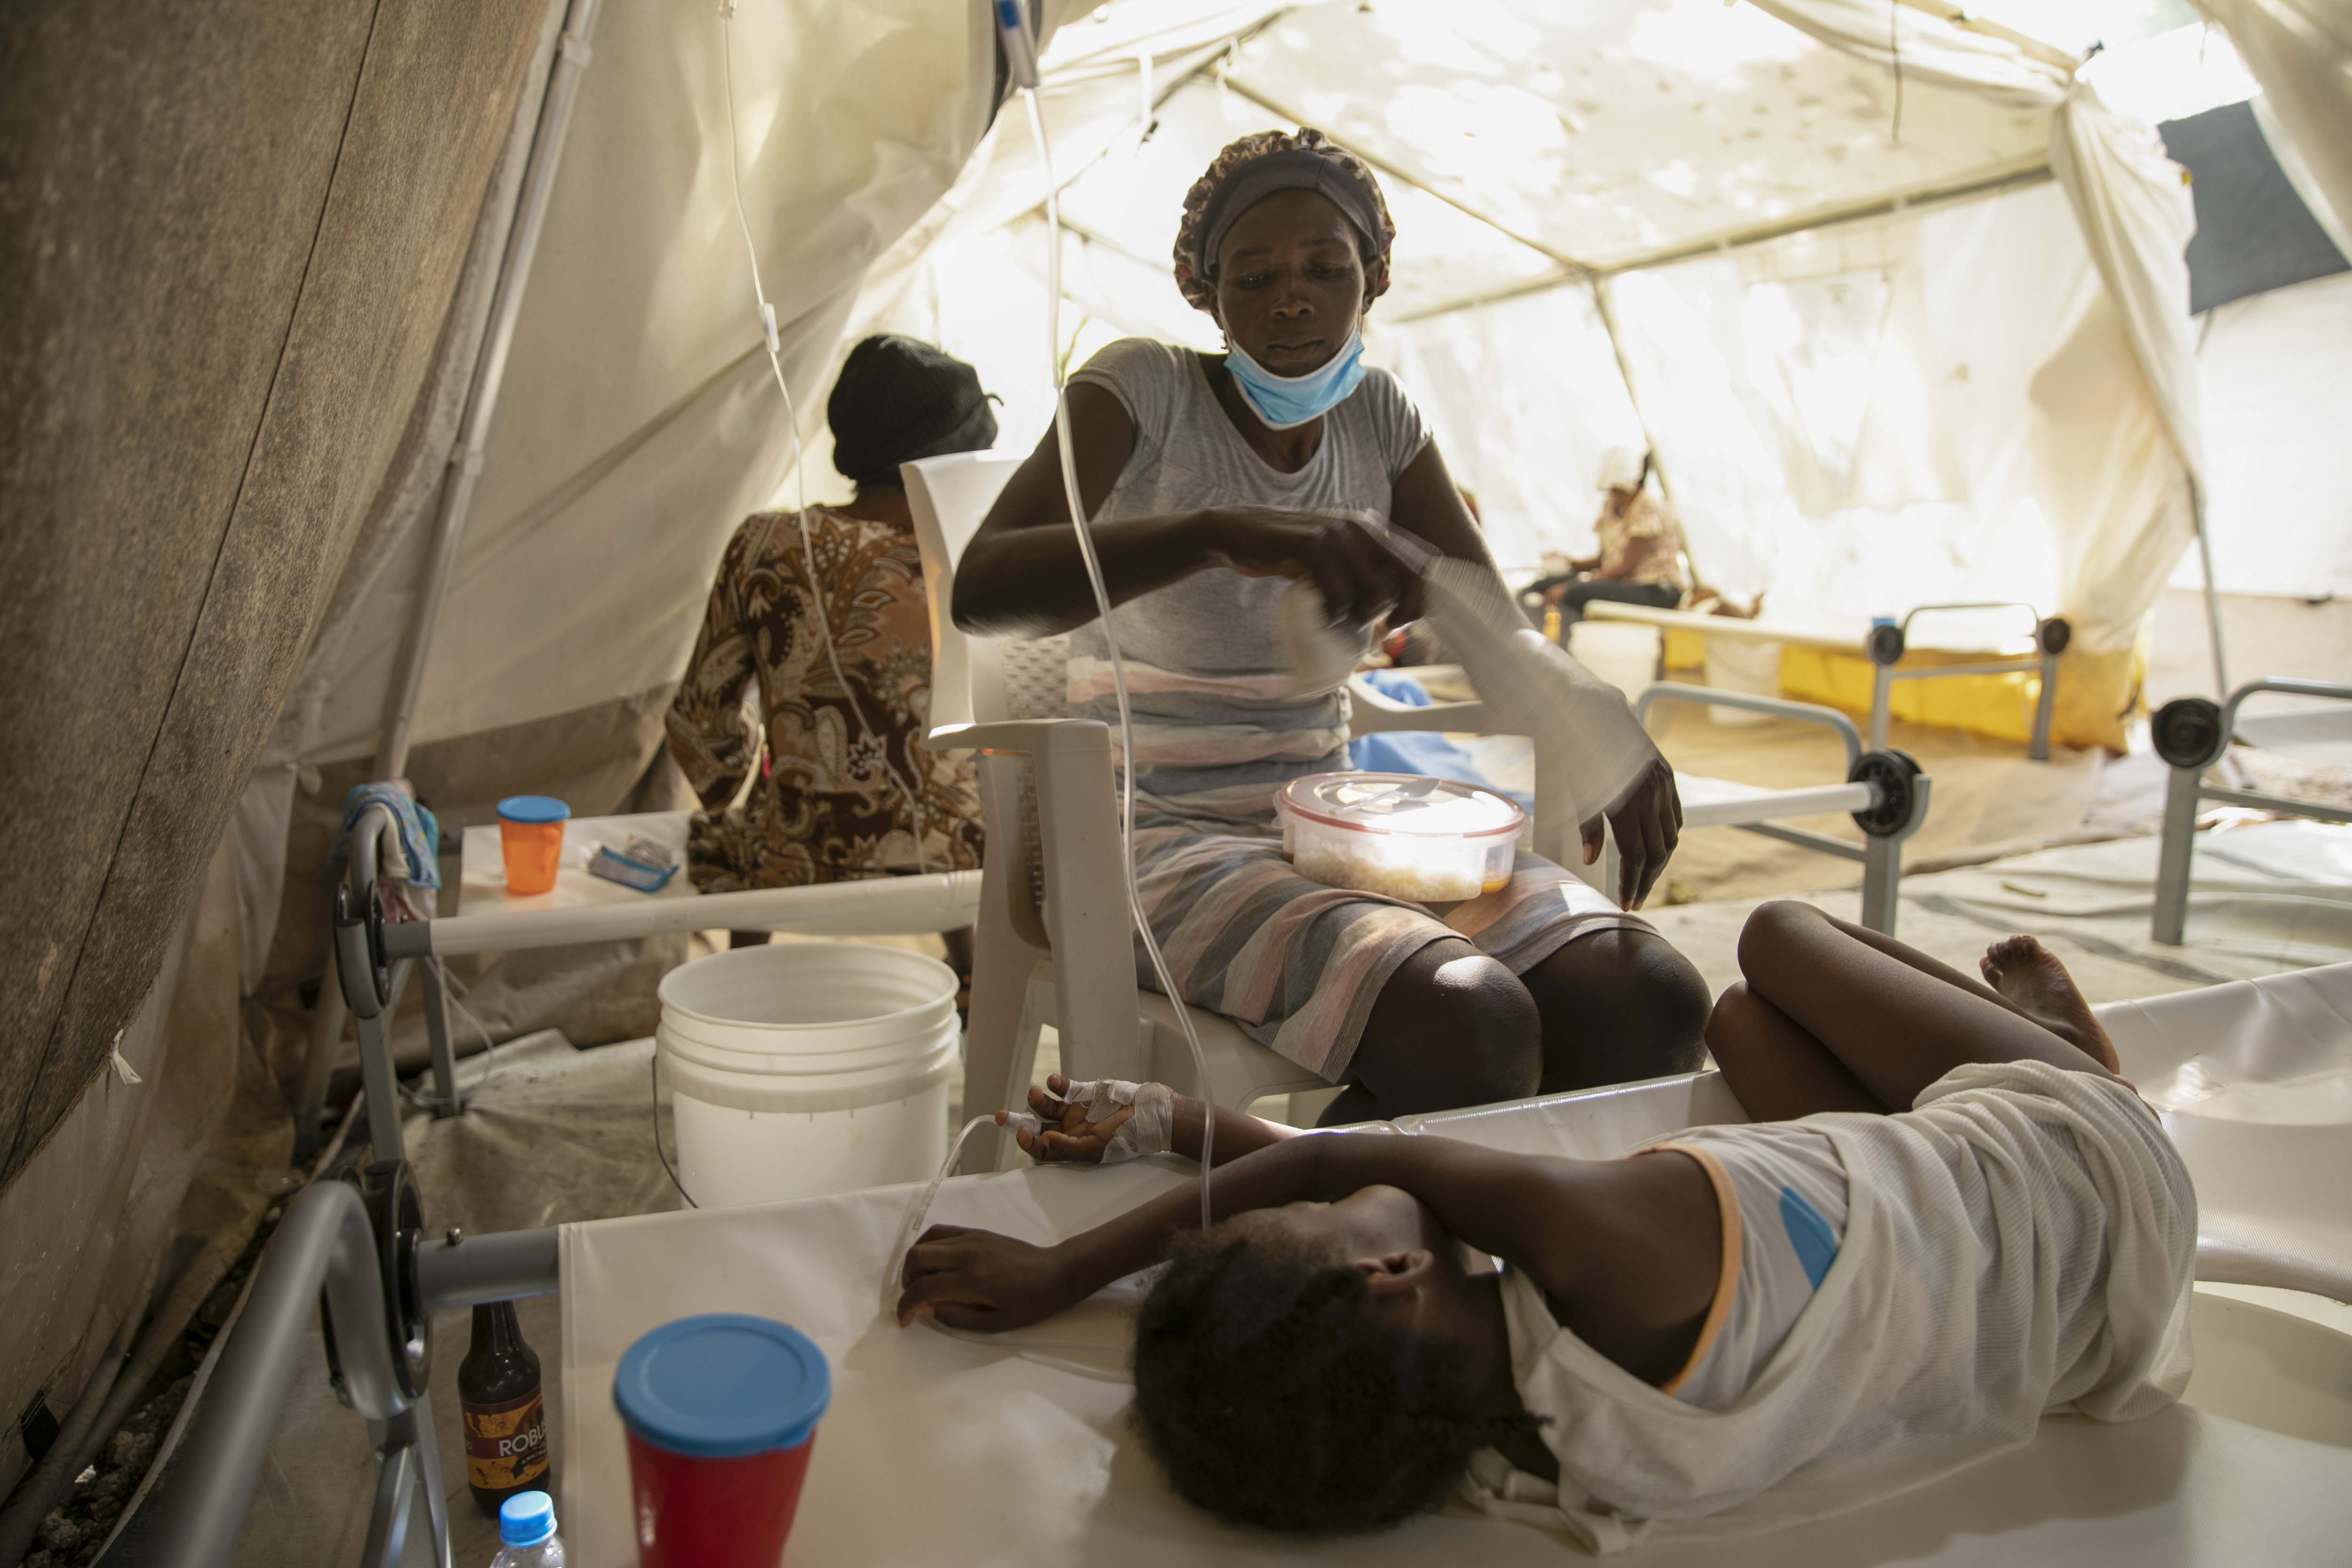 Una mujer usa una toalla para espantar las moscas de su hija enferma de cólera, en una clínica administrada por Médicos Sin Fronteras en Puerto Príncipe, Haití, el viernes 11 de noviembre de 2022. (Foto AP/Odelyn Joseph)
